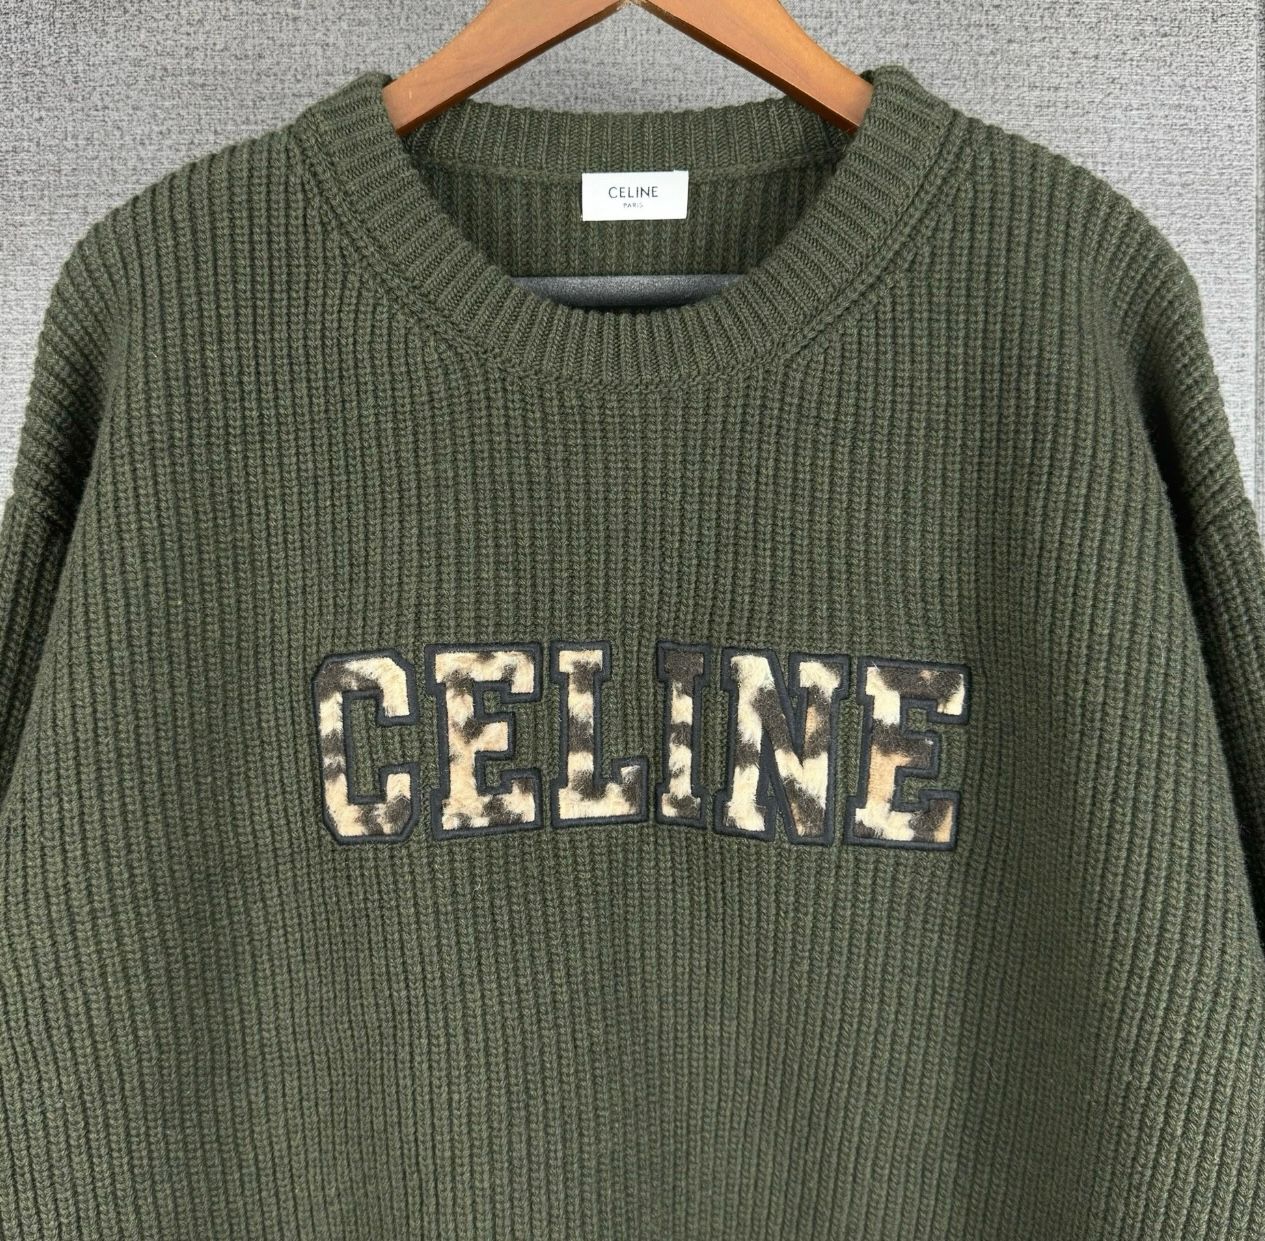 CELINE logo Leopard rib netting sweater - 3